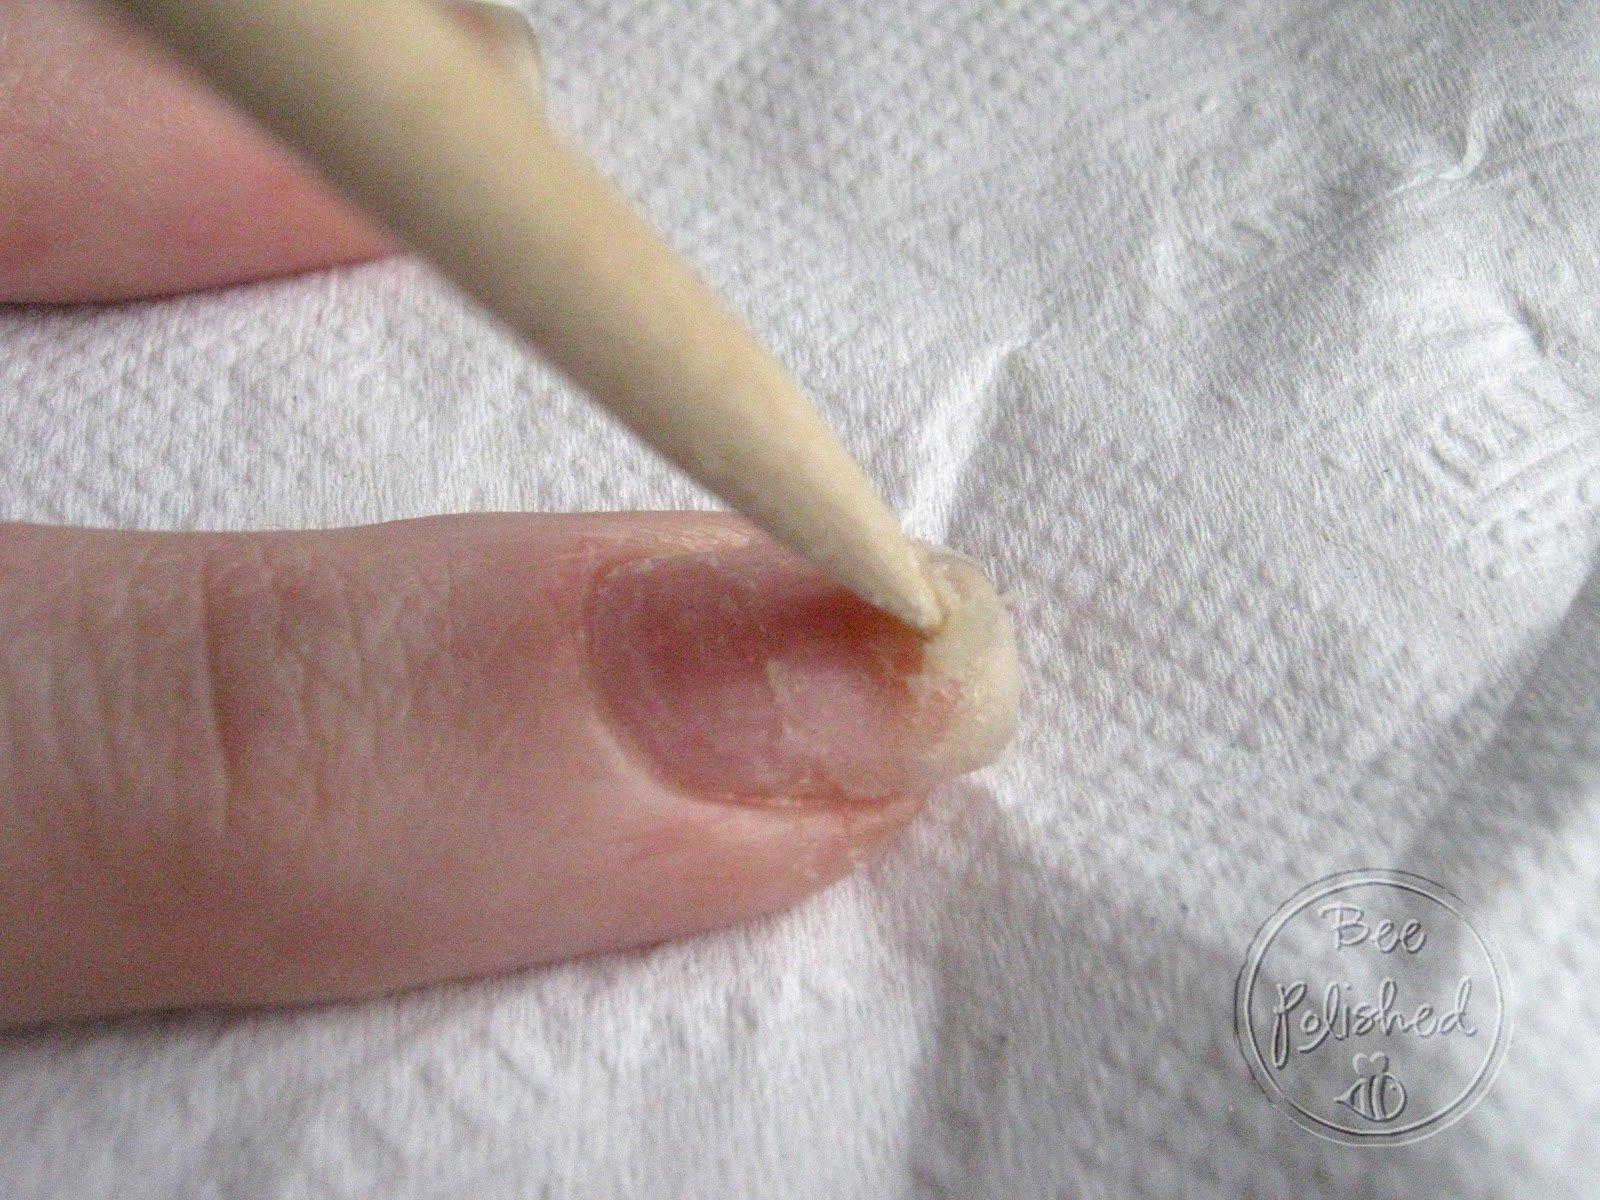 Почему отпадают нарощенные. Снятие нарощенных ногтей. Как снять нарощенные ногти. Как снять нарощенные ногти в домашних условиях. Снятие нарощенных ногтей в домашних условиях без аппарата.